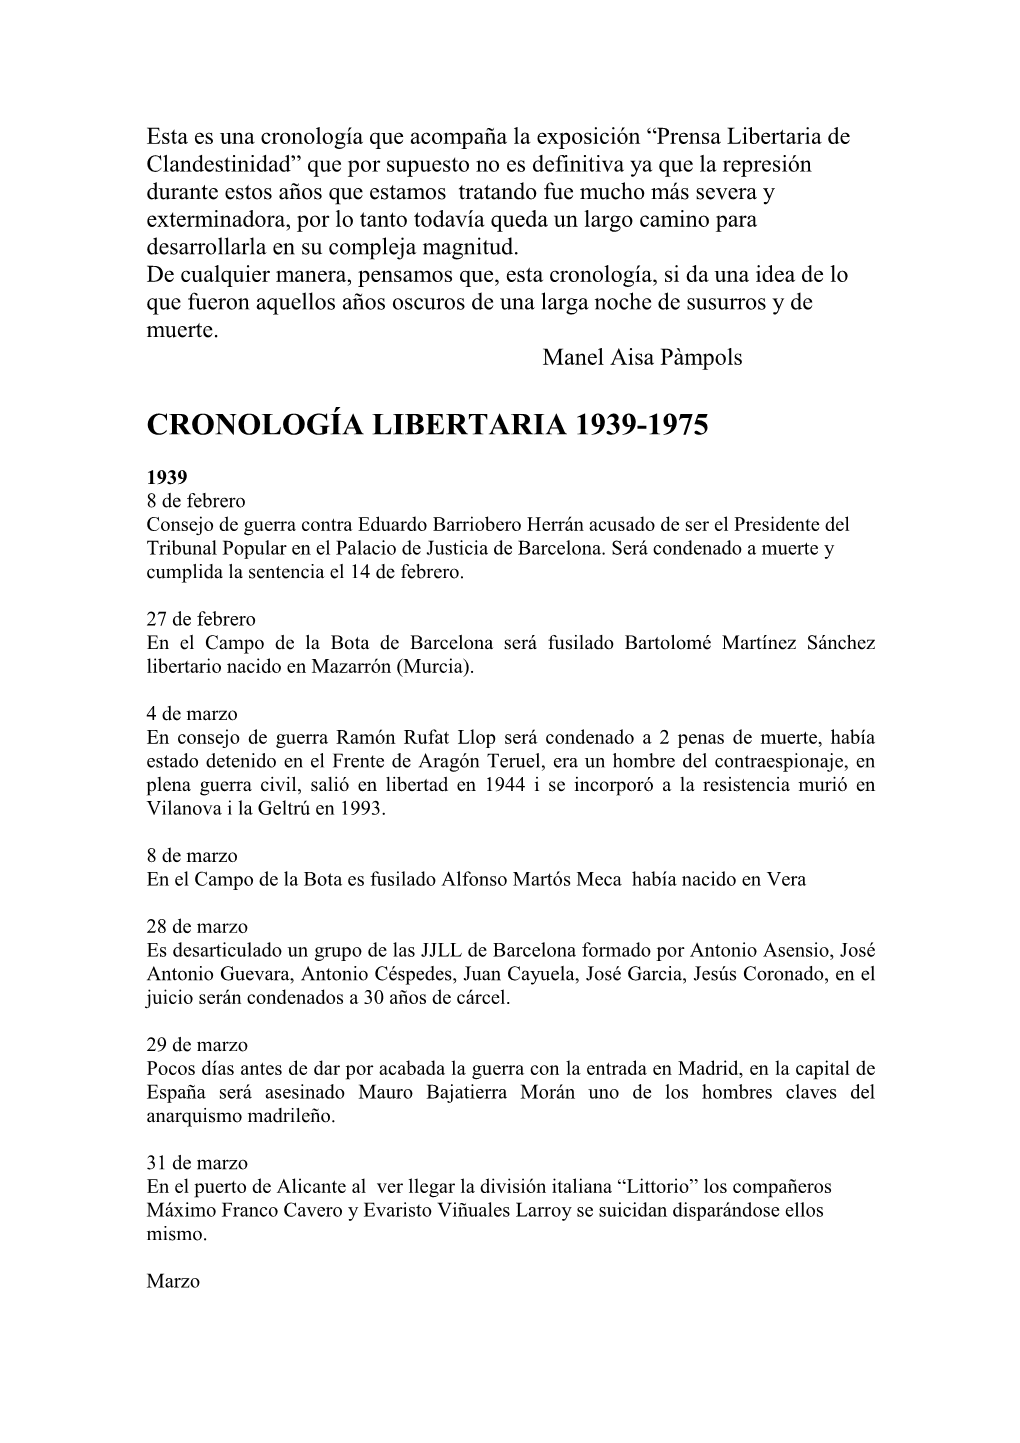 Cronología Libertaria 1939-1975